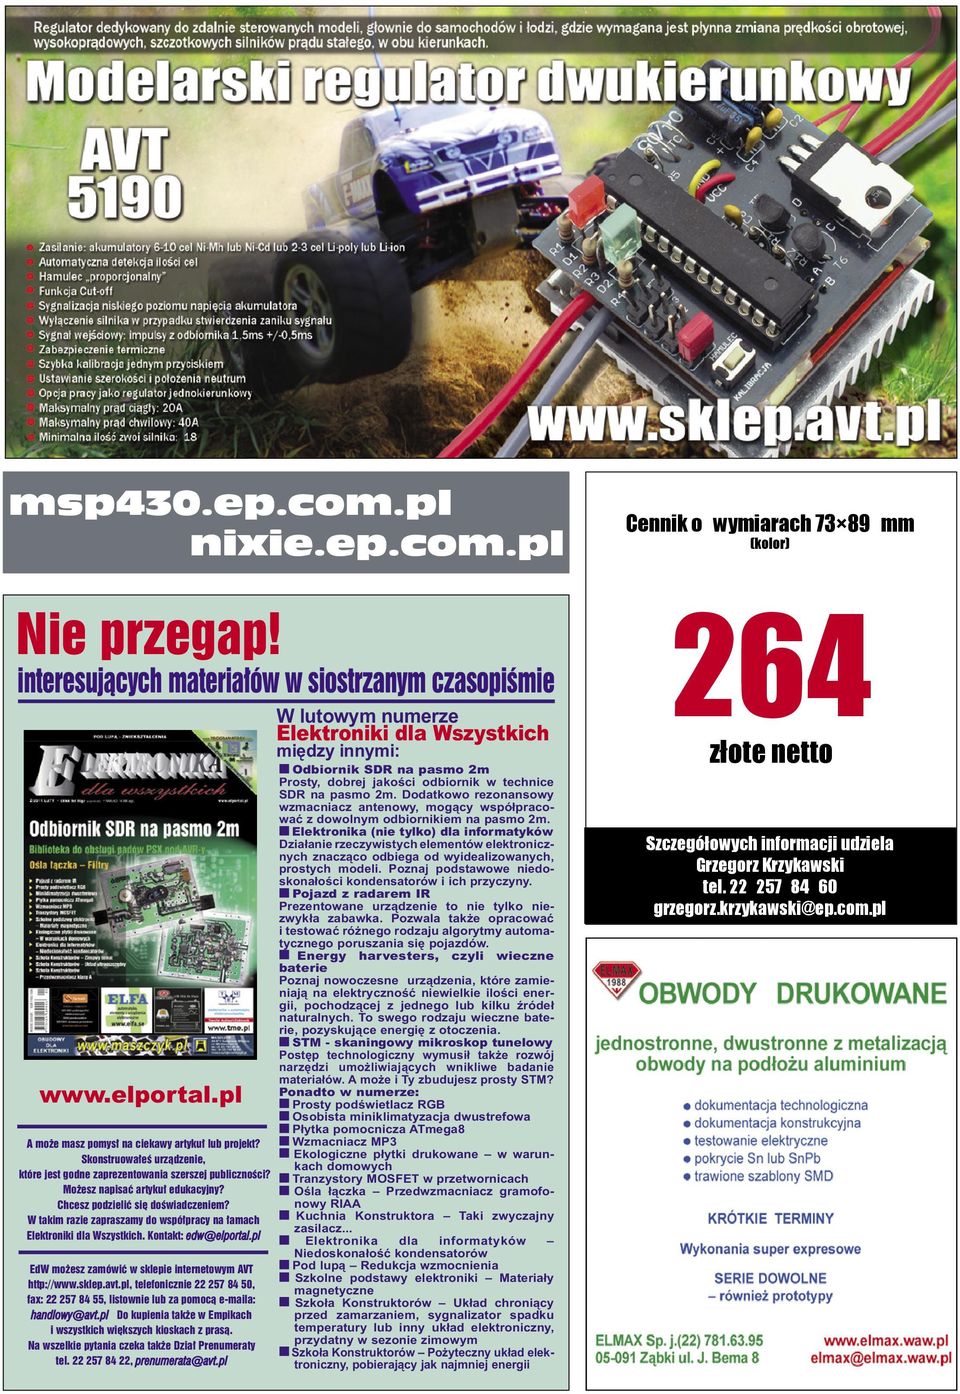 W takim razie zapraszamy do współpracy na łamach Elektroniki dla Wszystkich. Kontakt: edw@elportal.pl EdW możesz zamówić w sklepie internetowym AVT http://www.sklep.avt.